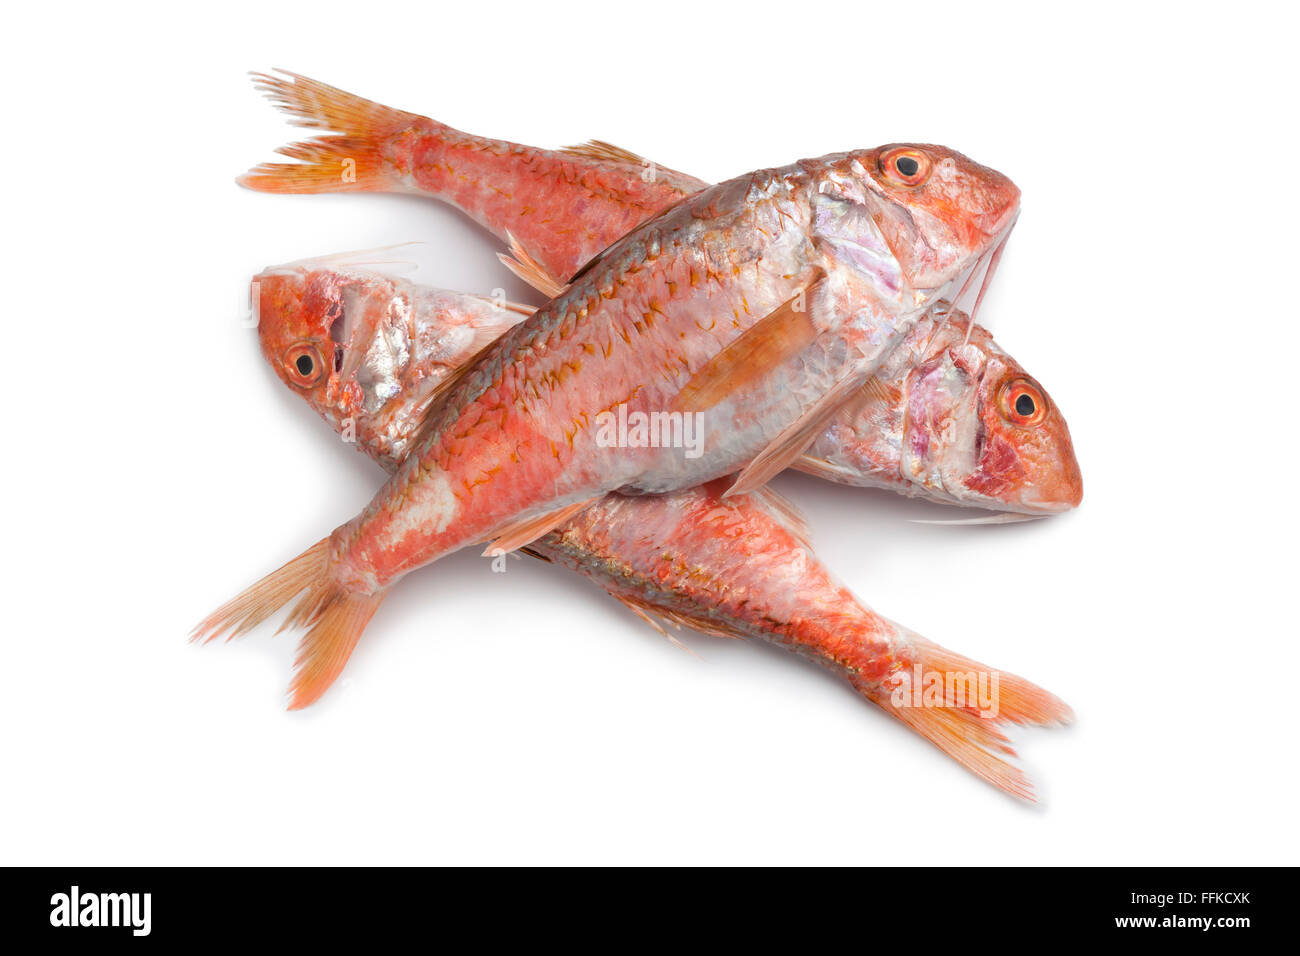 Frische rohe rote Meerbarbe Fische auf weißem Hintergrund Stockfoto